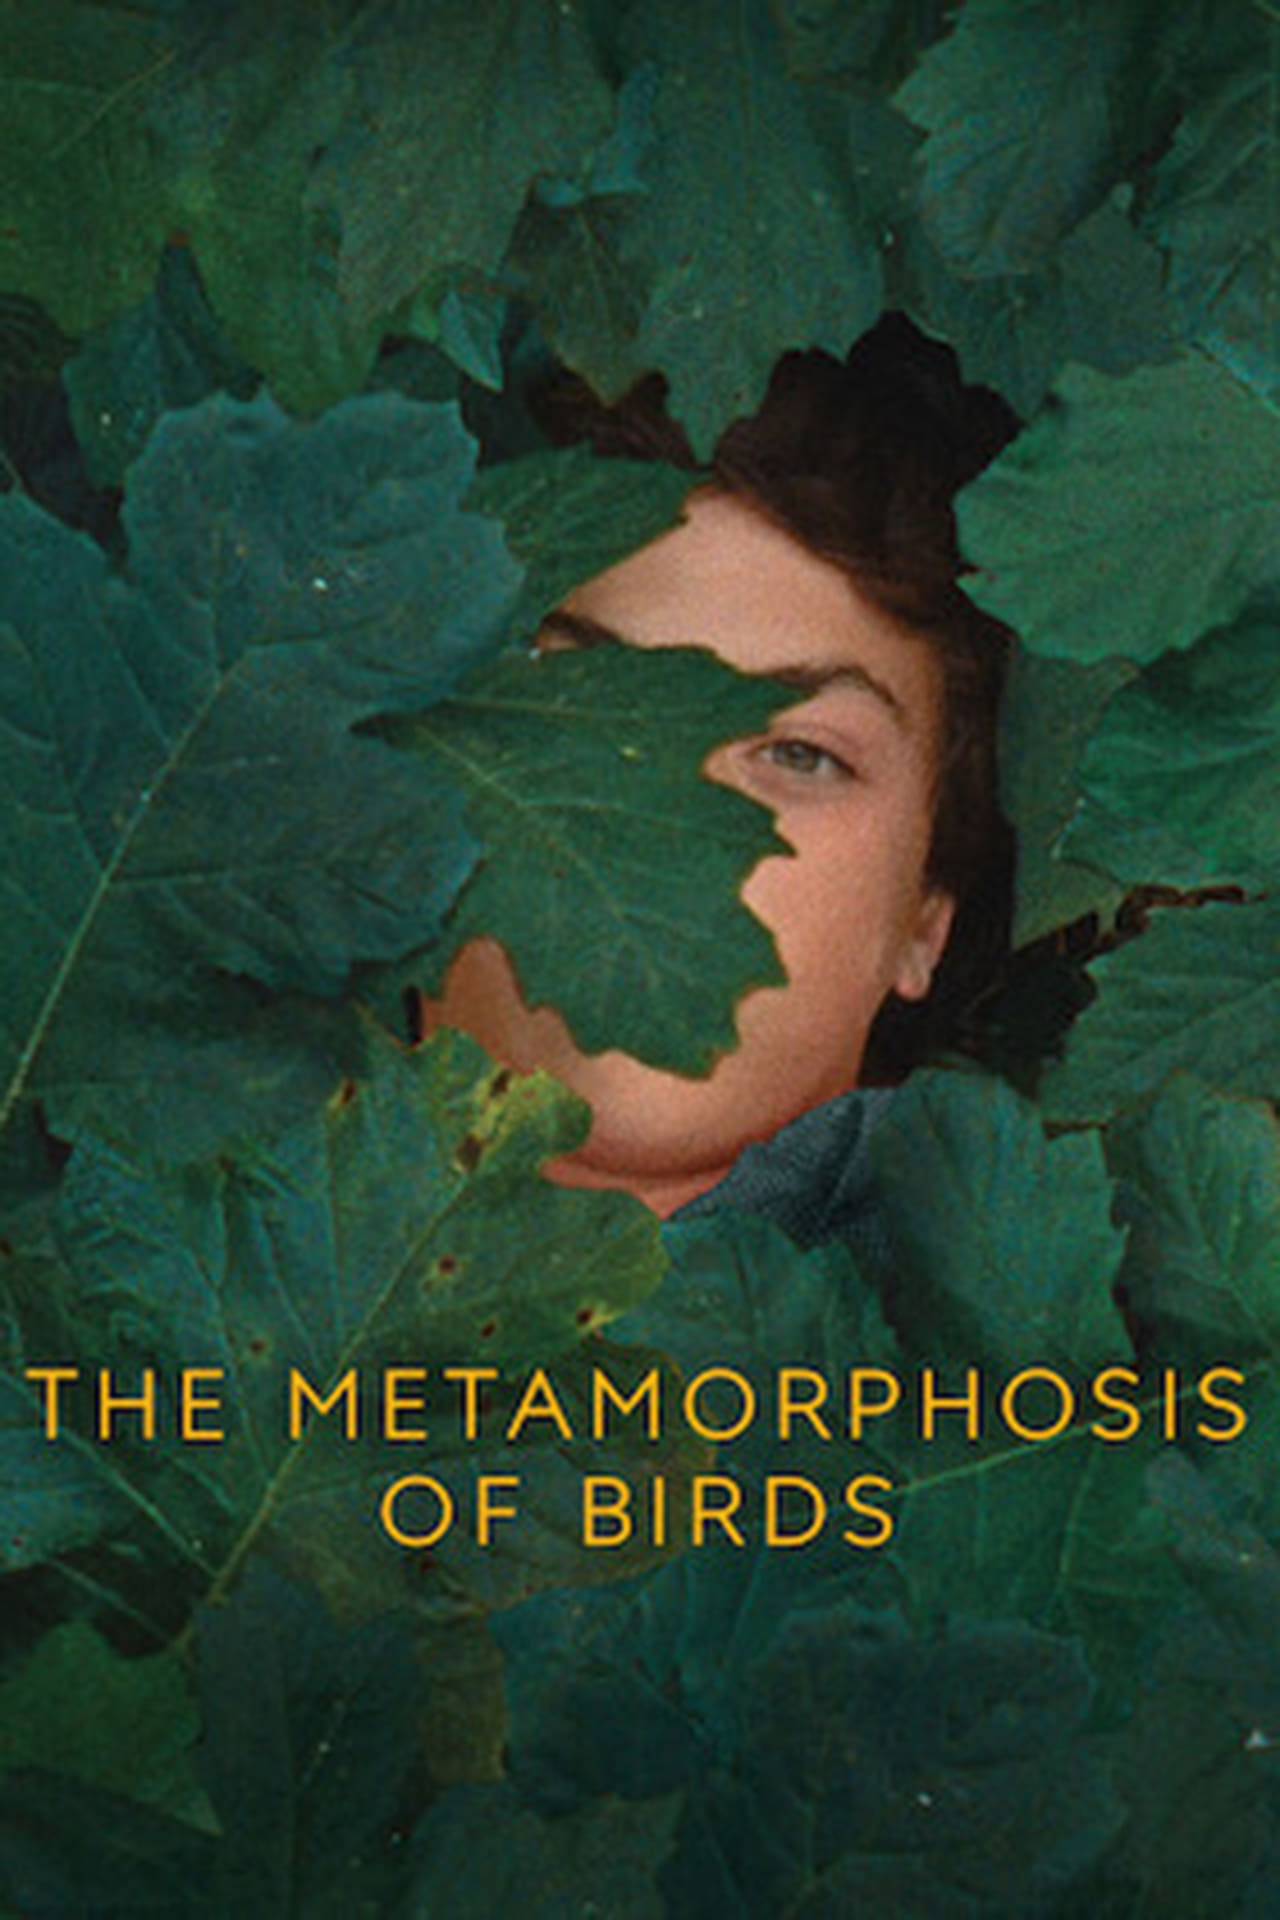 The Metamorphosis of Birds